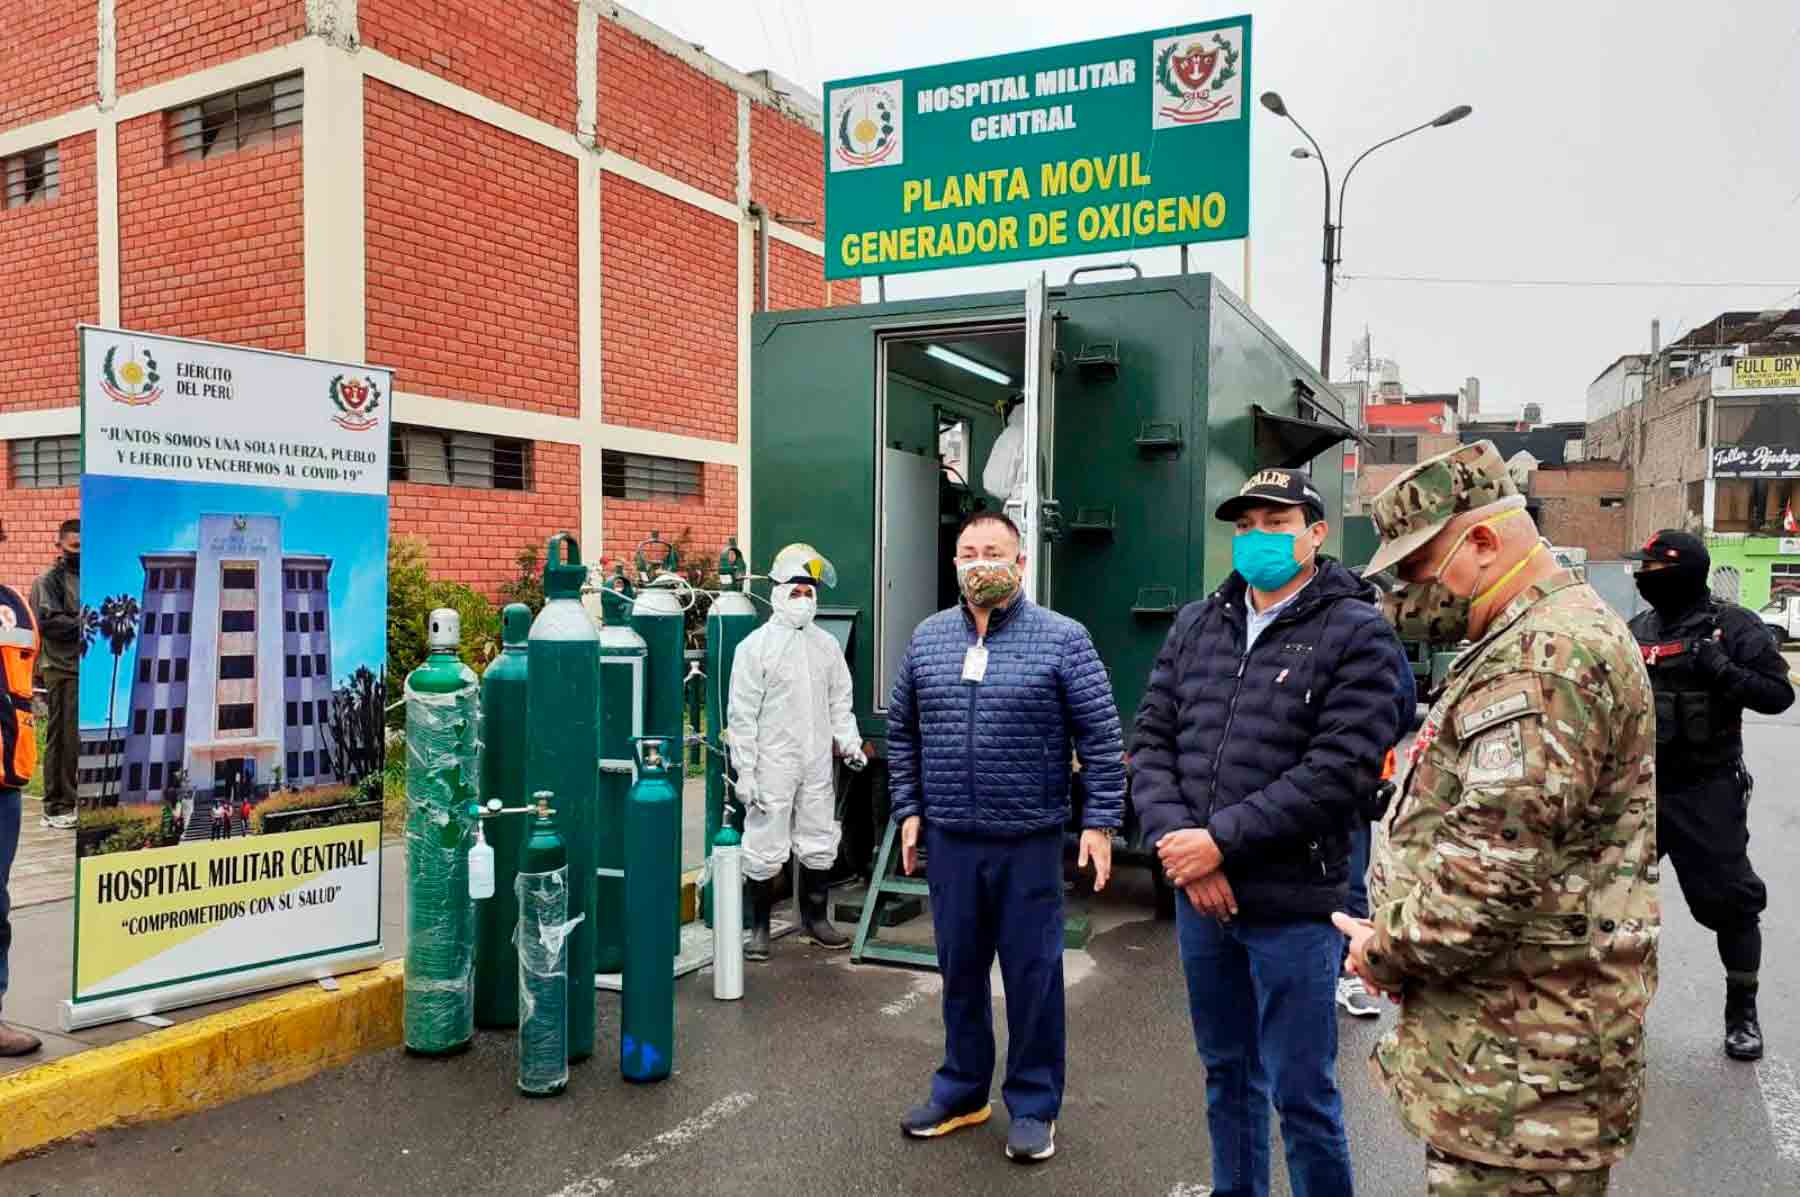 Portada: Ejército instaló planta móvil de oxígeno en el distrito de San Miguel